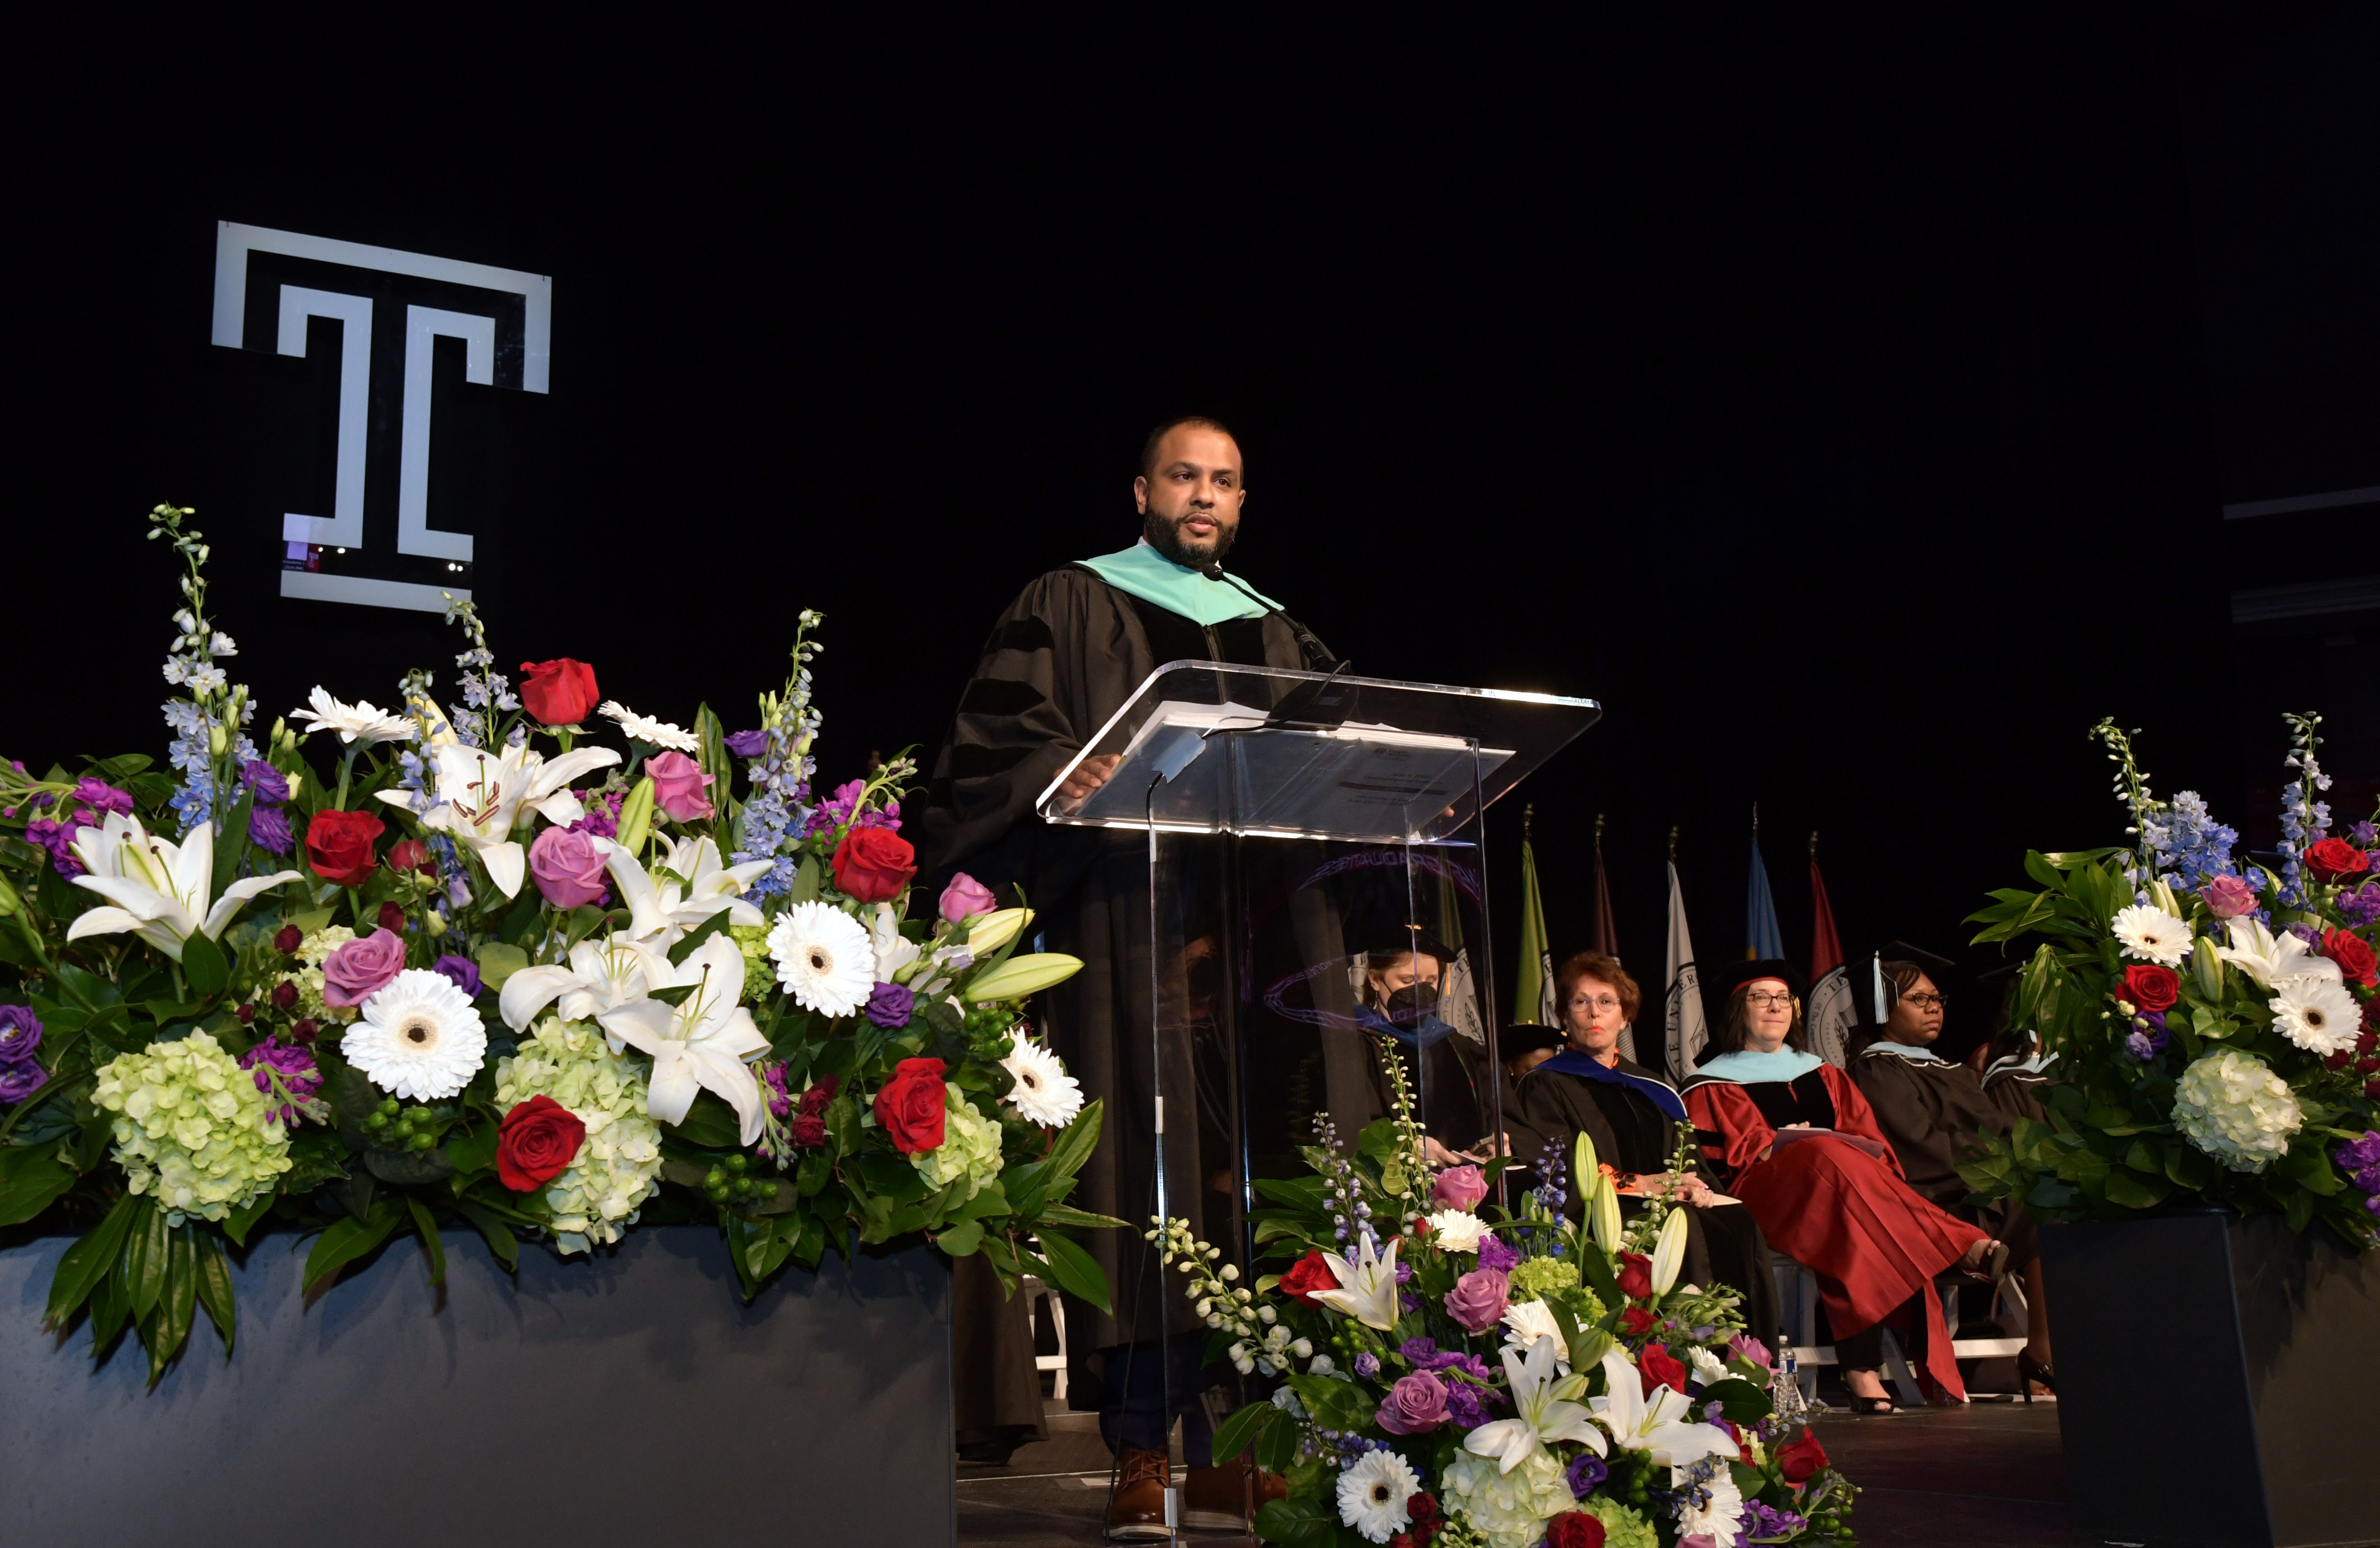 graduation speaker at podium